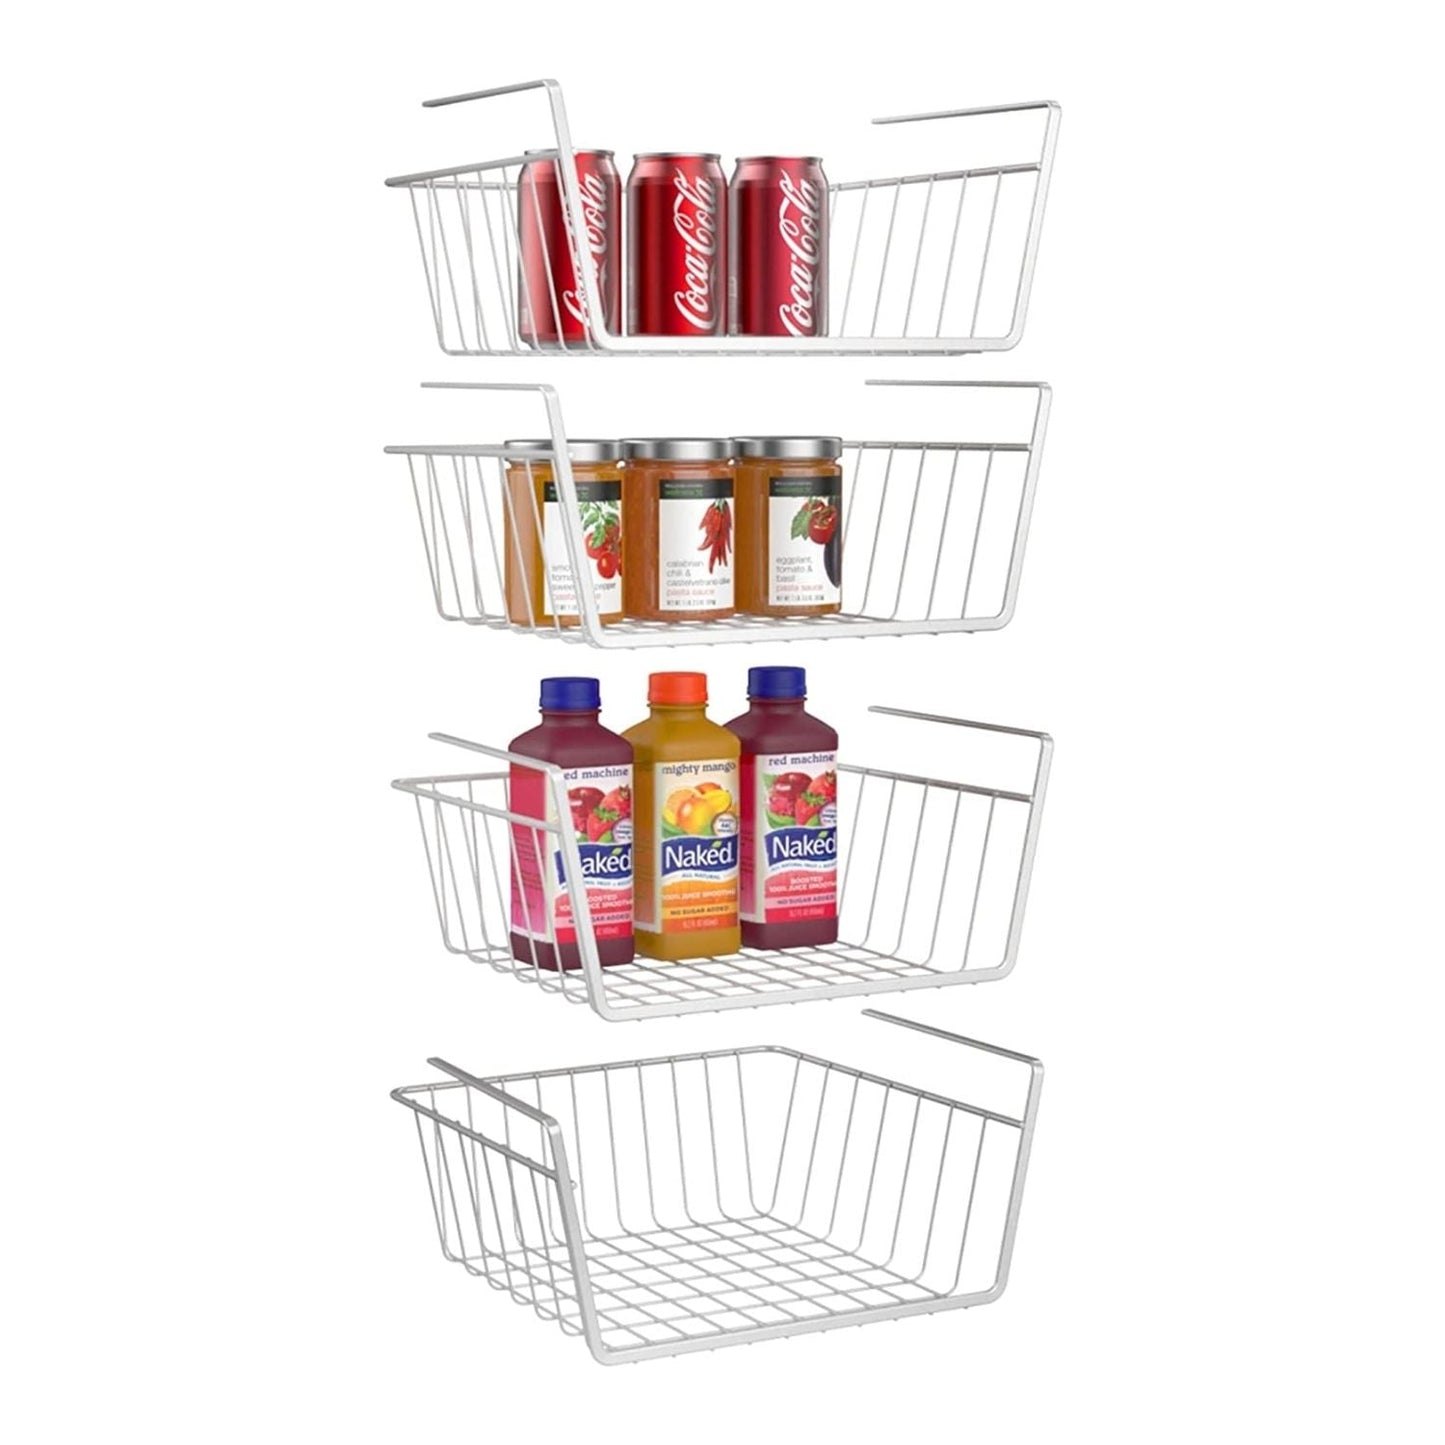 More Inside  Under shelf basket, Basket shelves, Under shelf storage